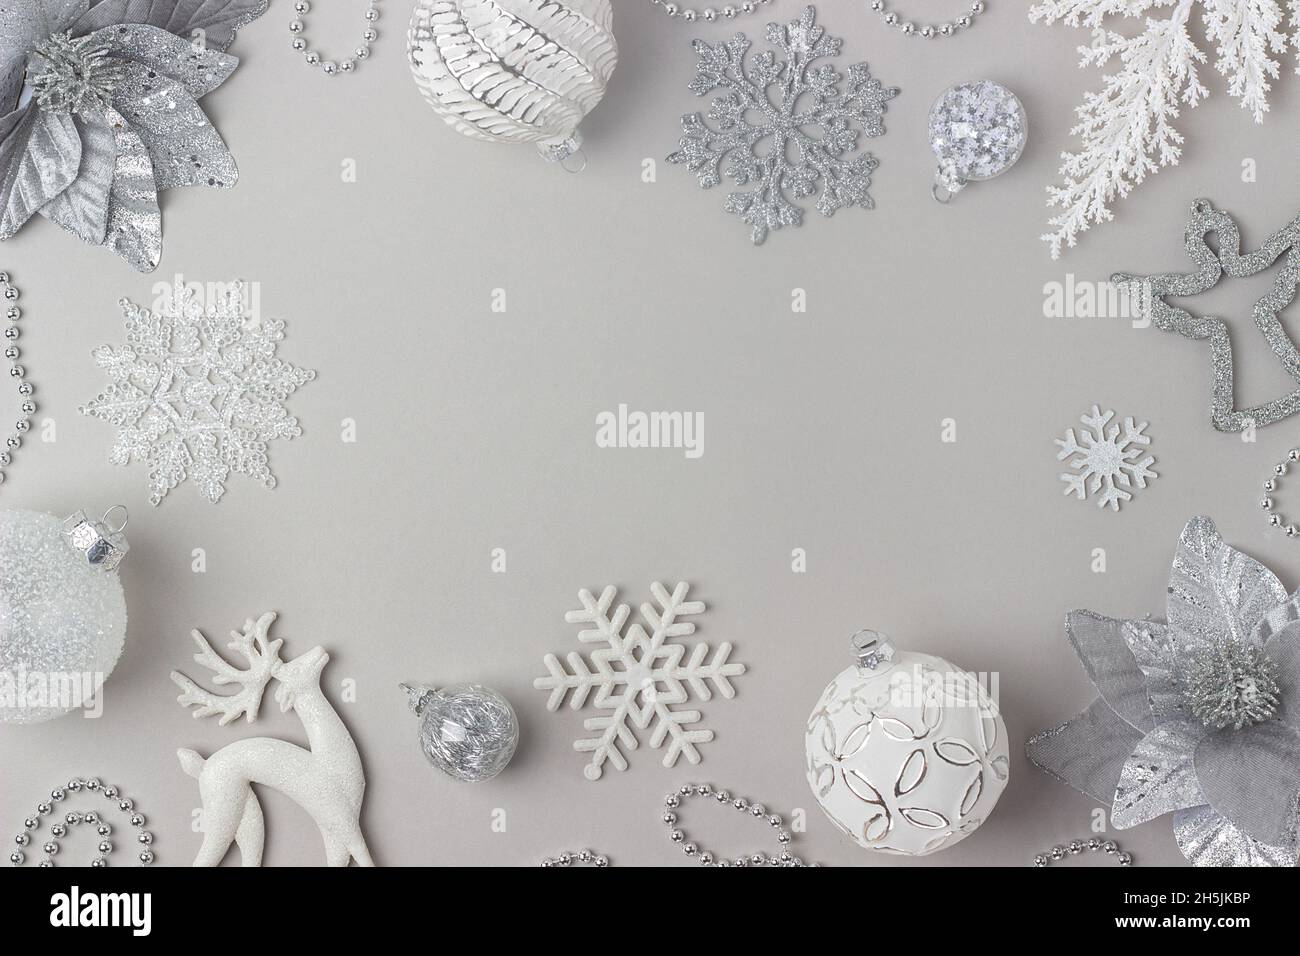 Cadre des fêtes fait argent et blanc brillant décorations de noël sur fond gris.Concept joyeux Noël, Noël et nouvel an.Vue de dessus, Flat lay, Co Banque D'Images